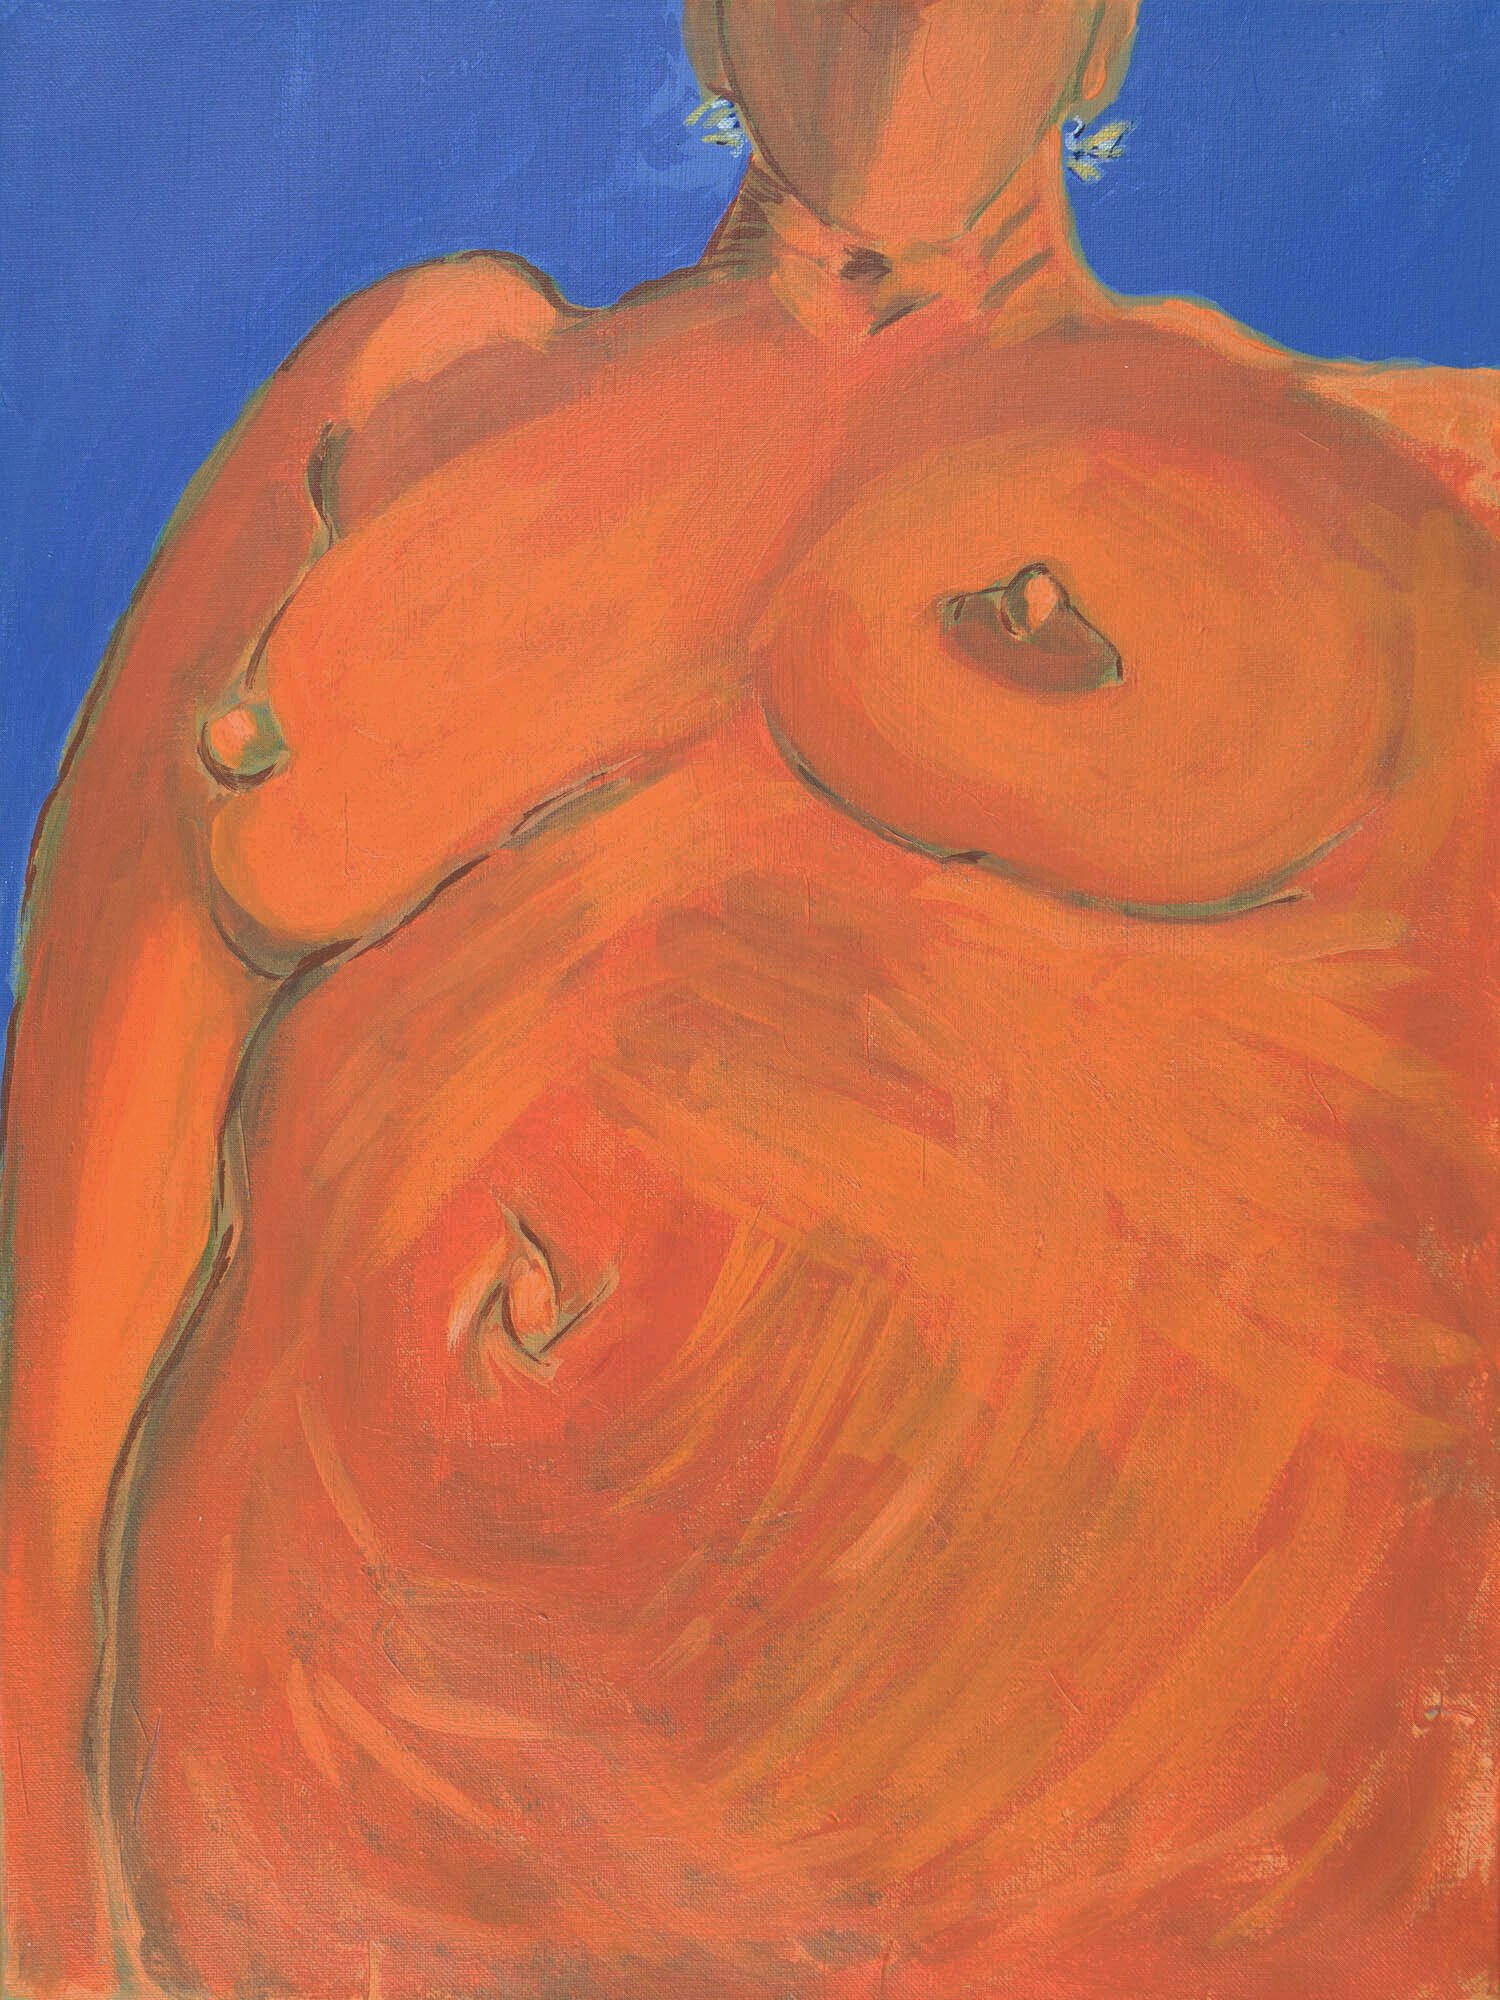 Naked II, Acrylic on Canvas, 16” x 20”